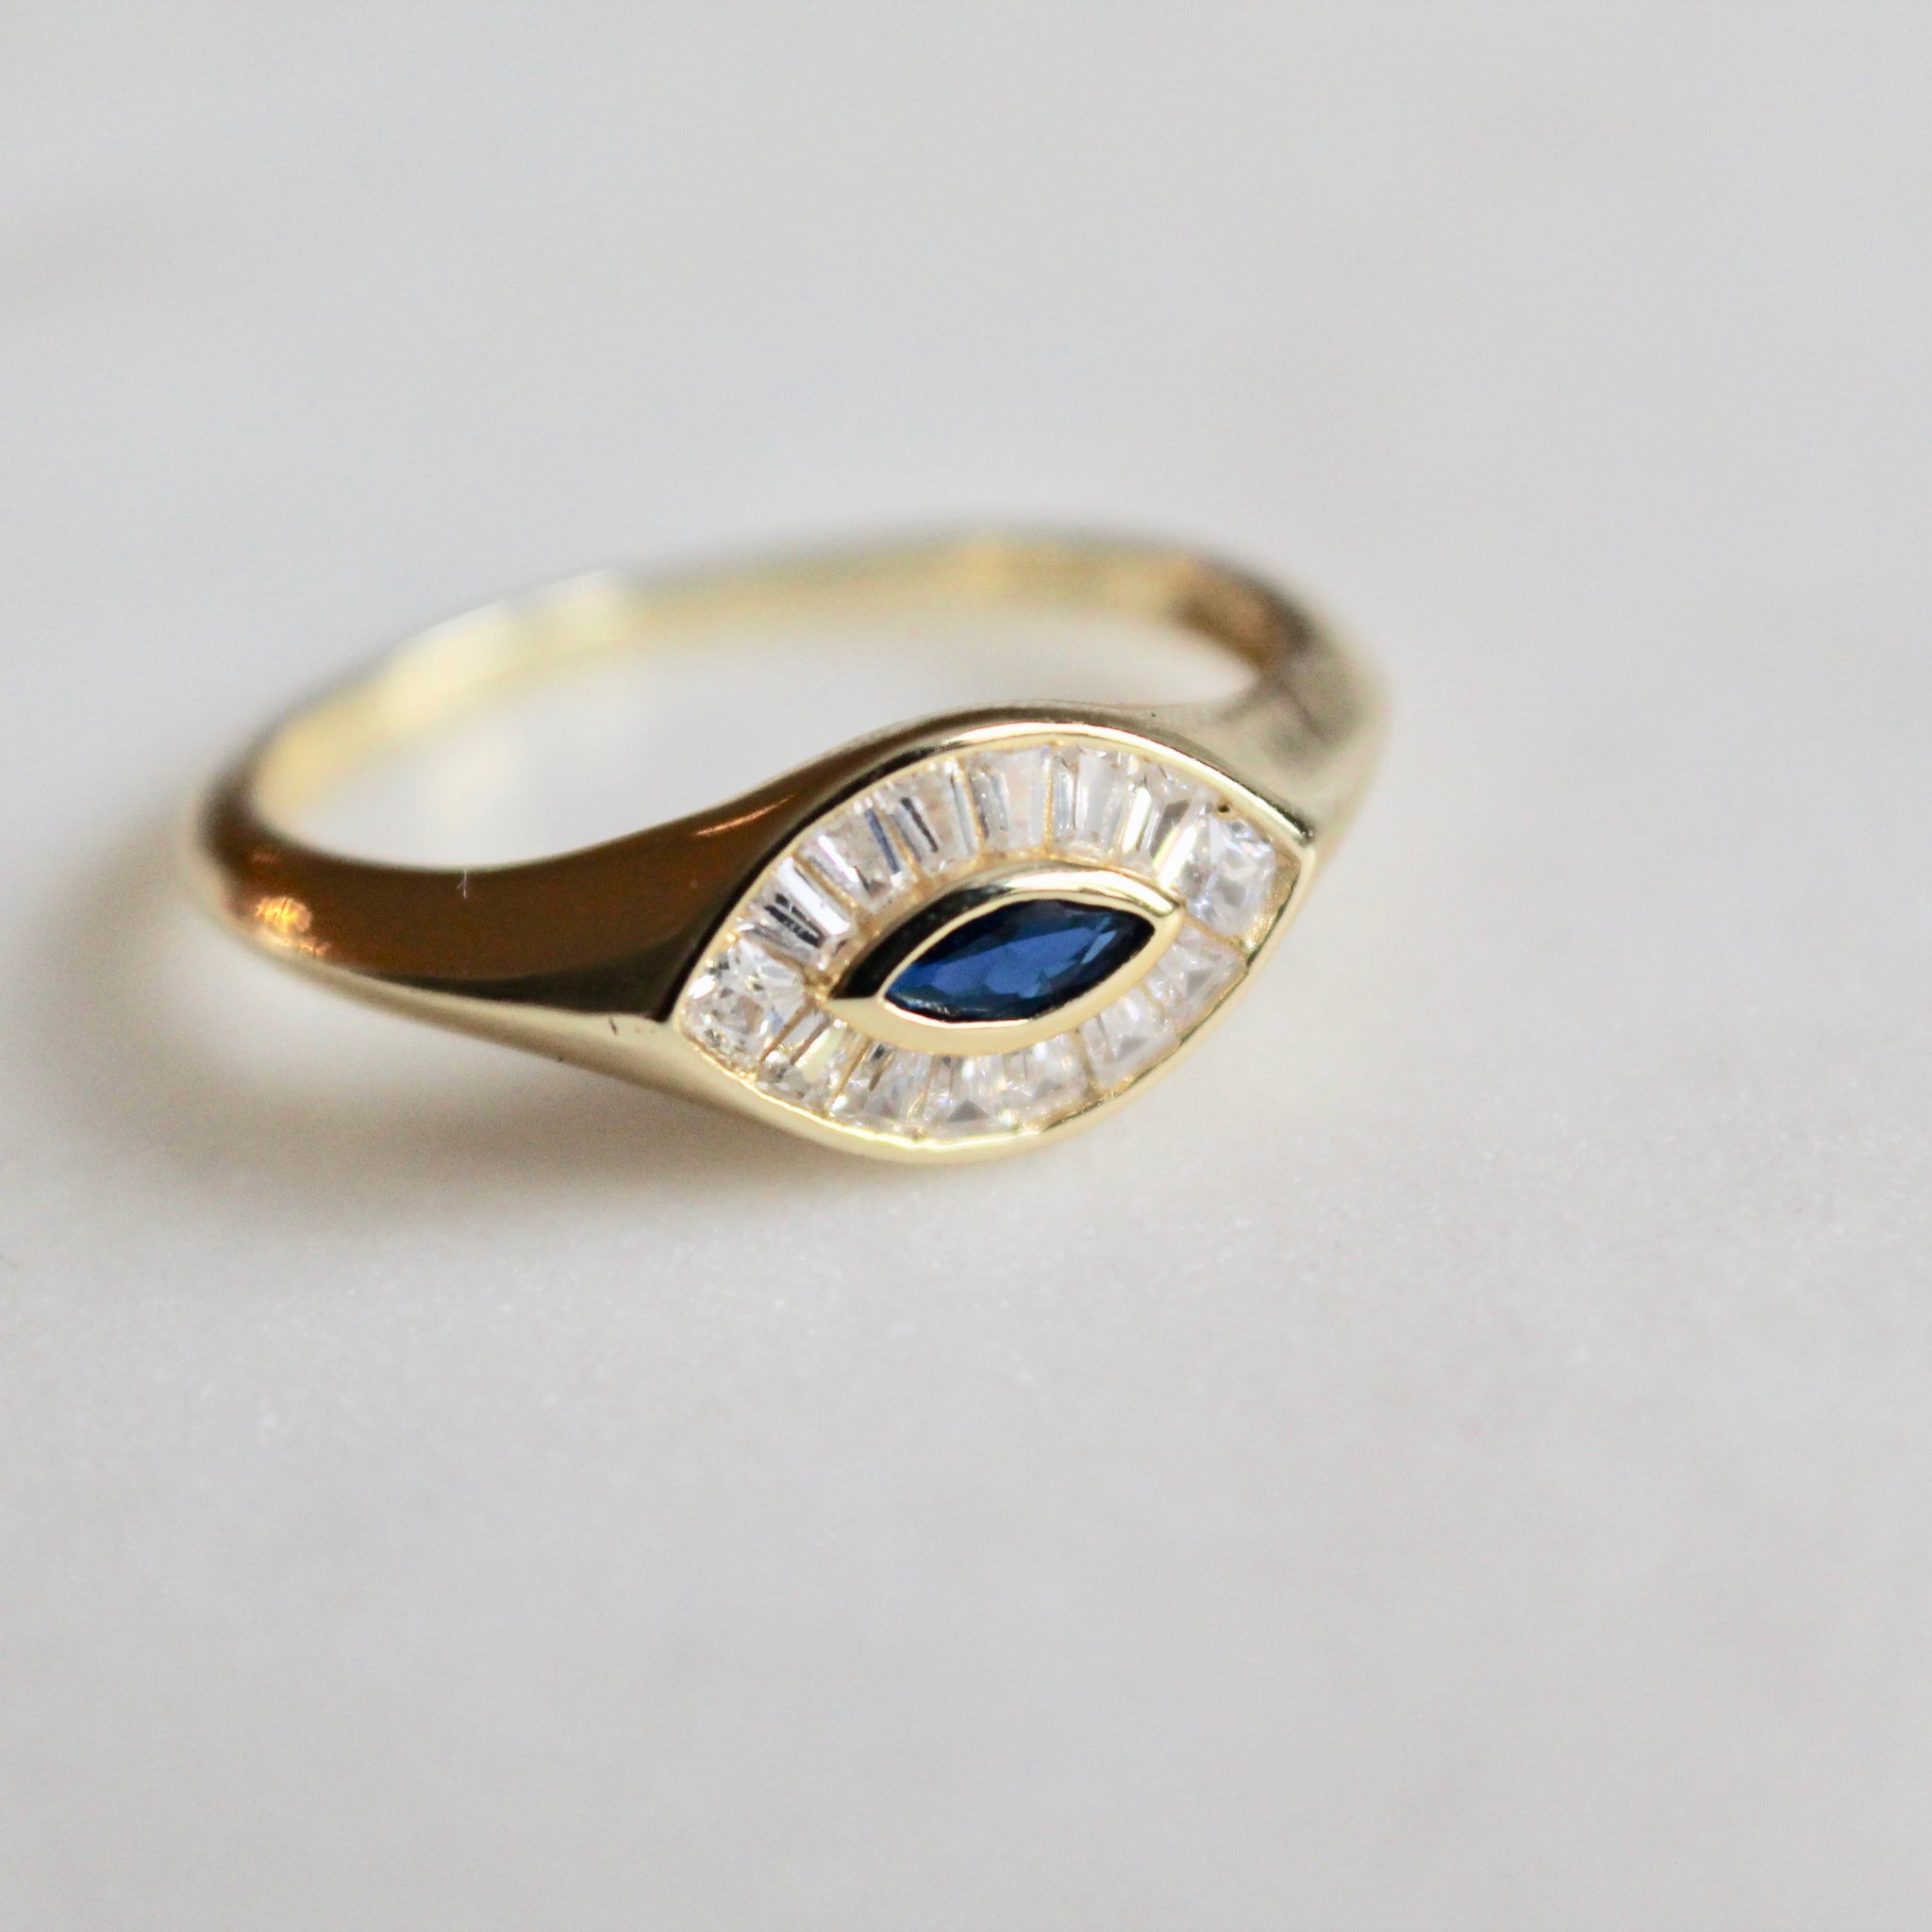 Blue evil eye ring